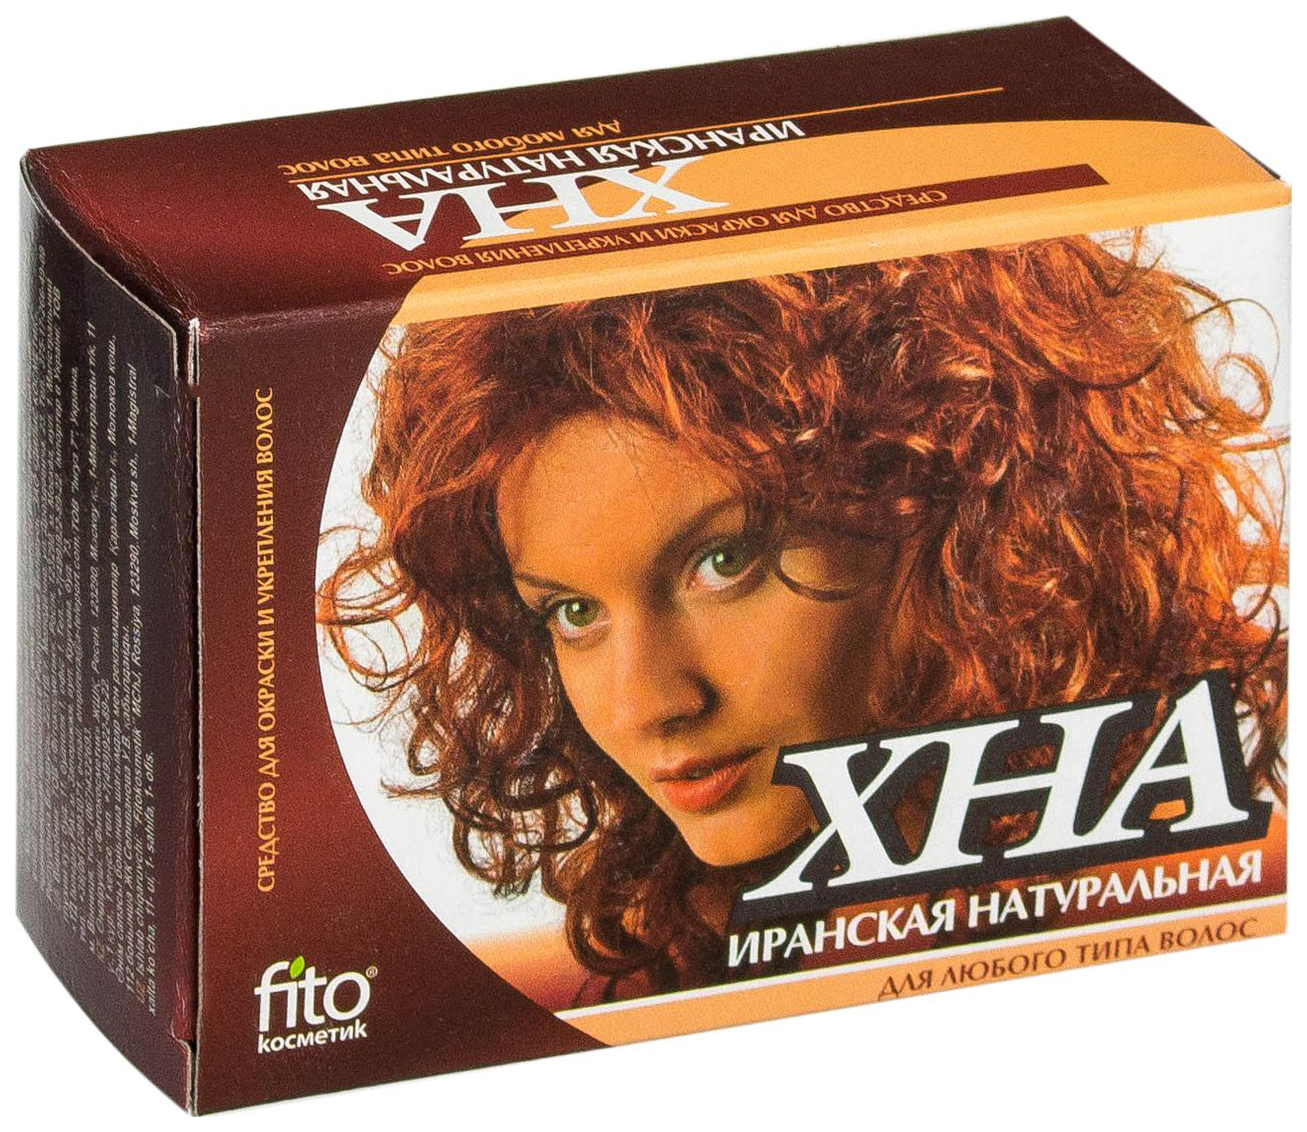 Купить Краска для волос Фитокосметик Хна иранская натуральная 125 г, Fito Косметик